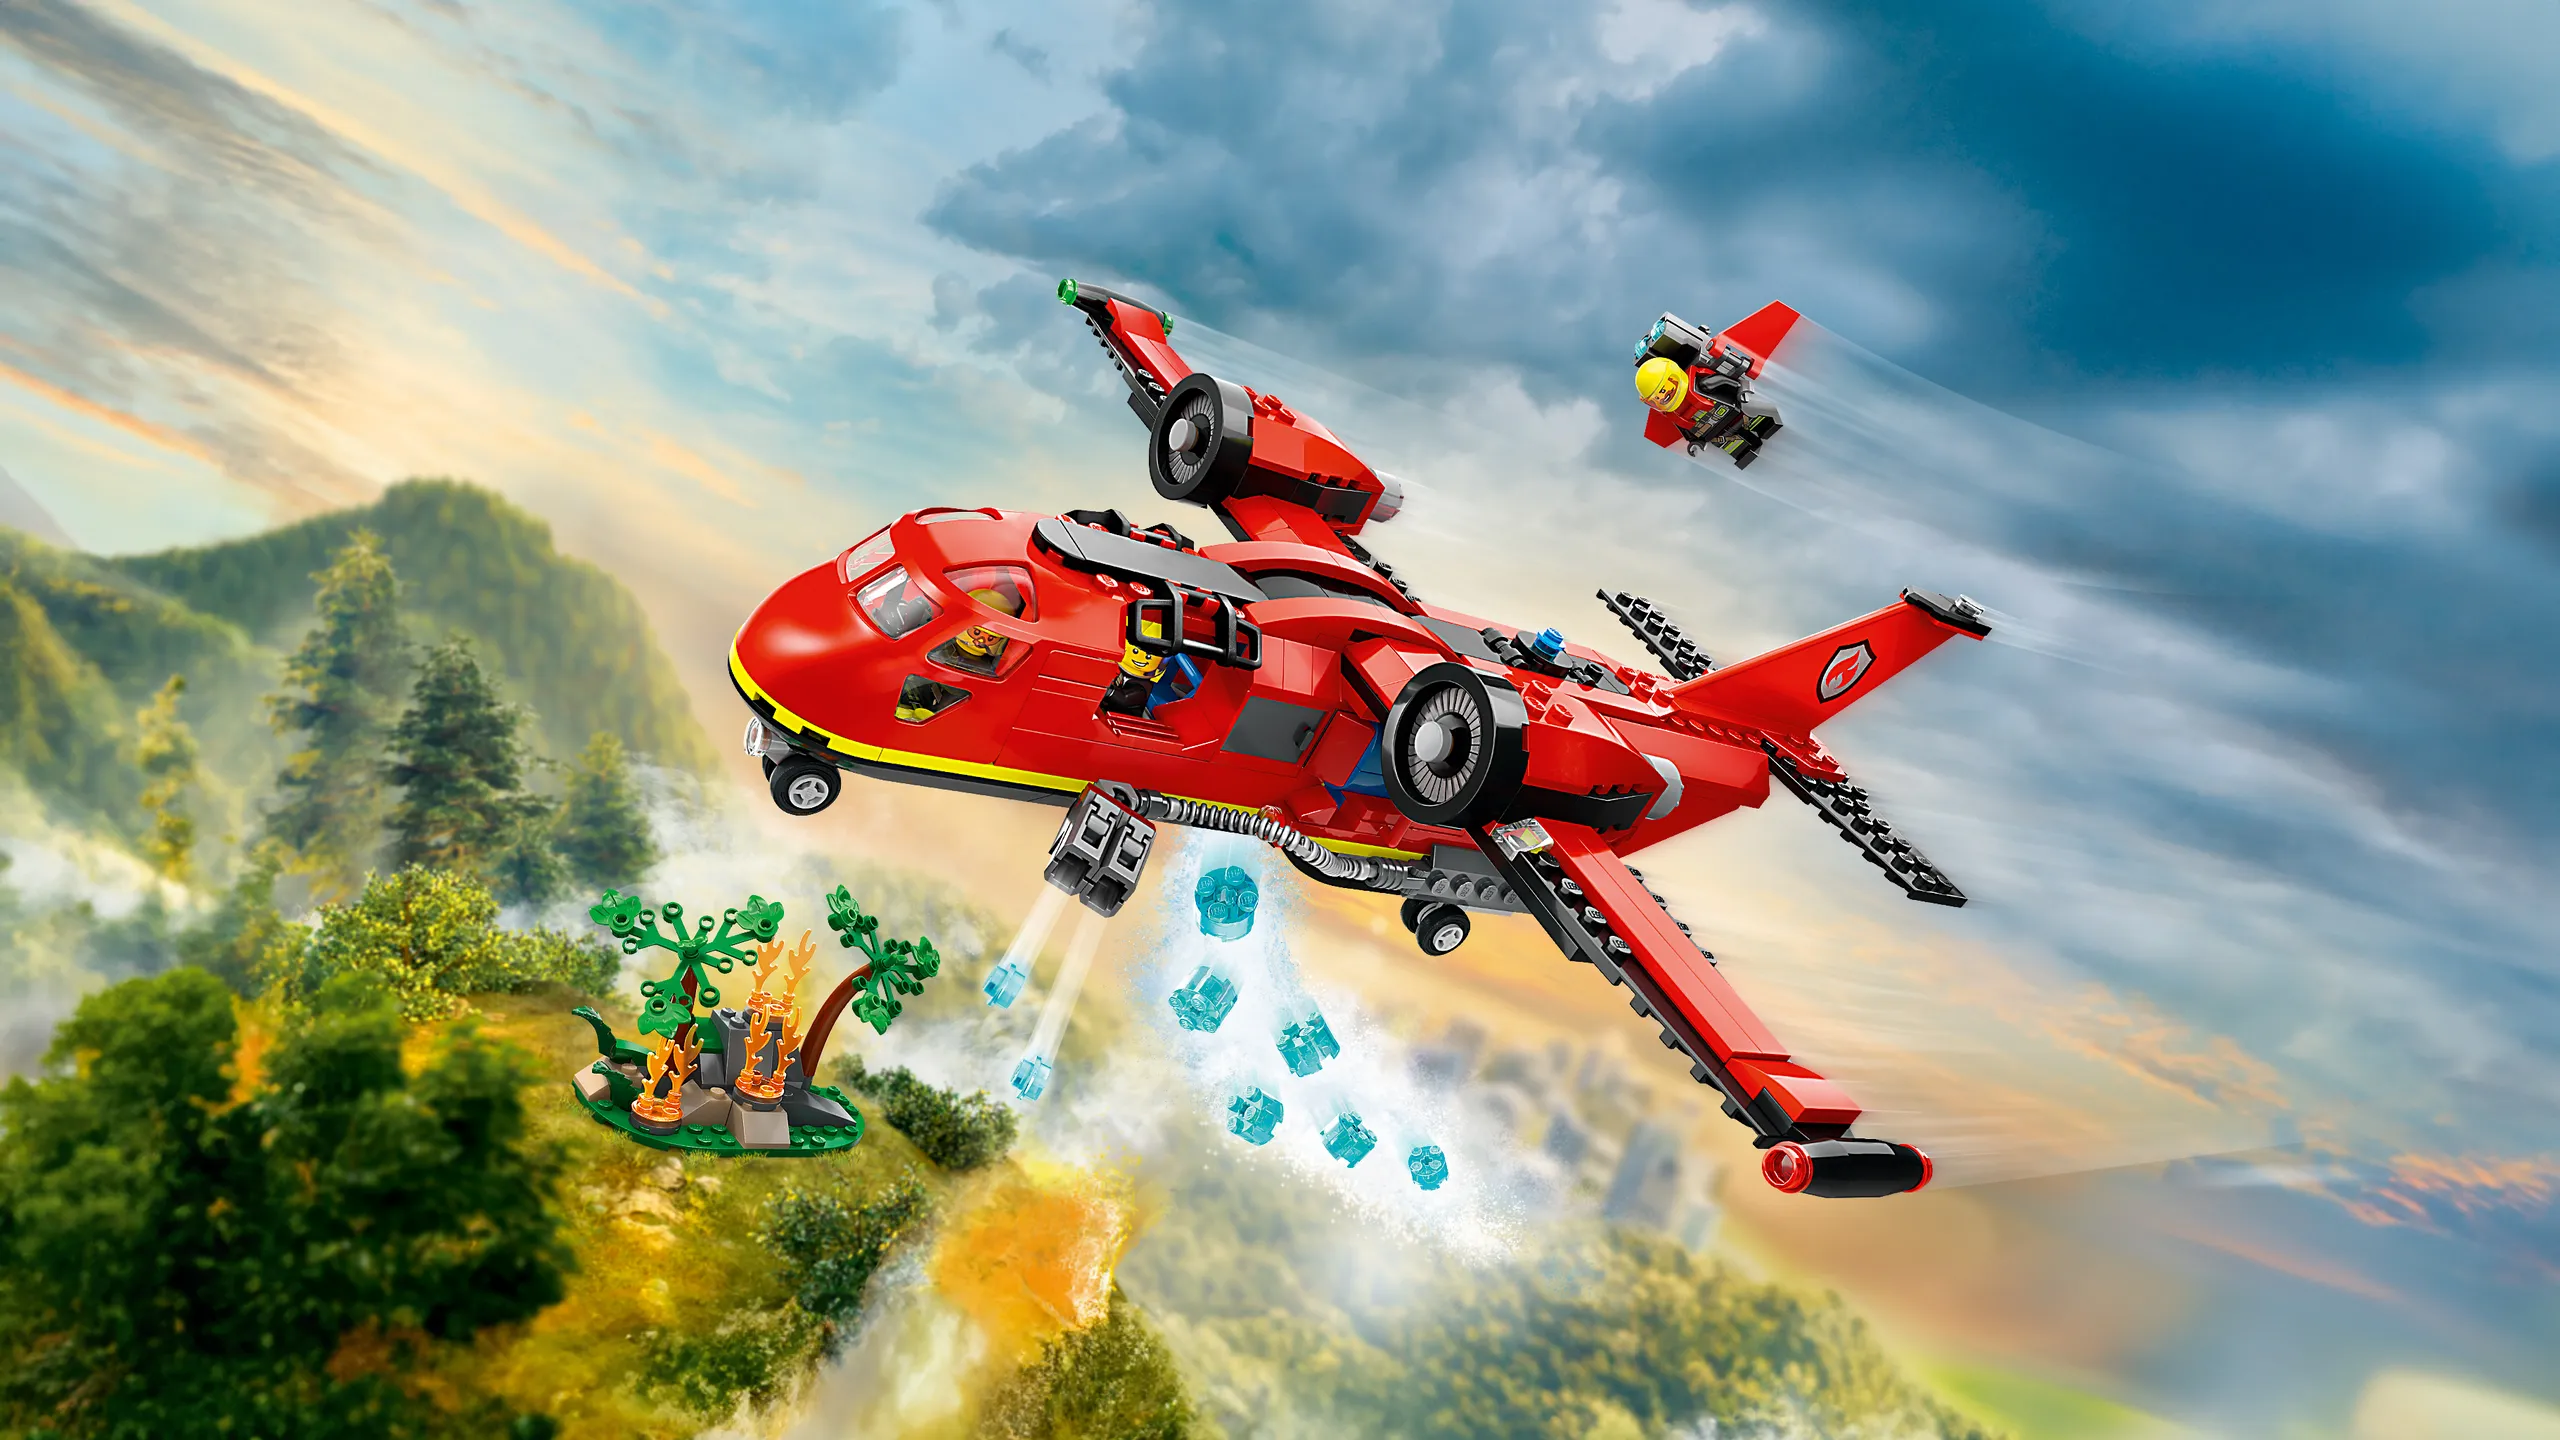 Lego city - livre des héros de la ville : Collectif - 2378890060 - Livres  jeux et d'activités